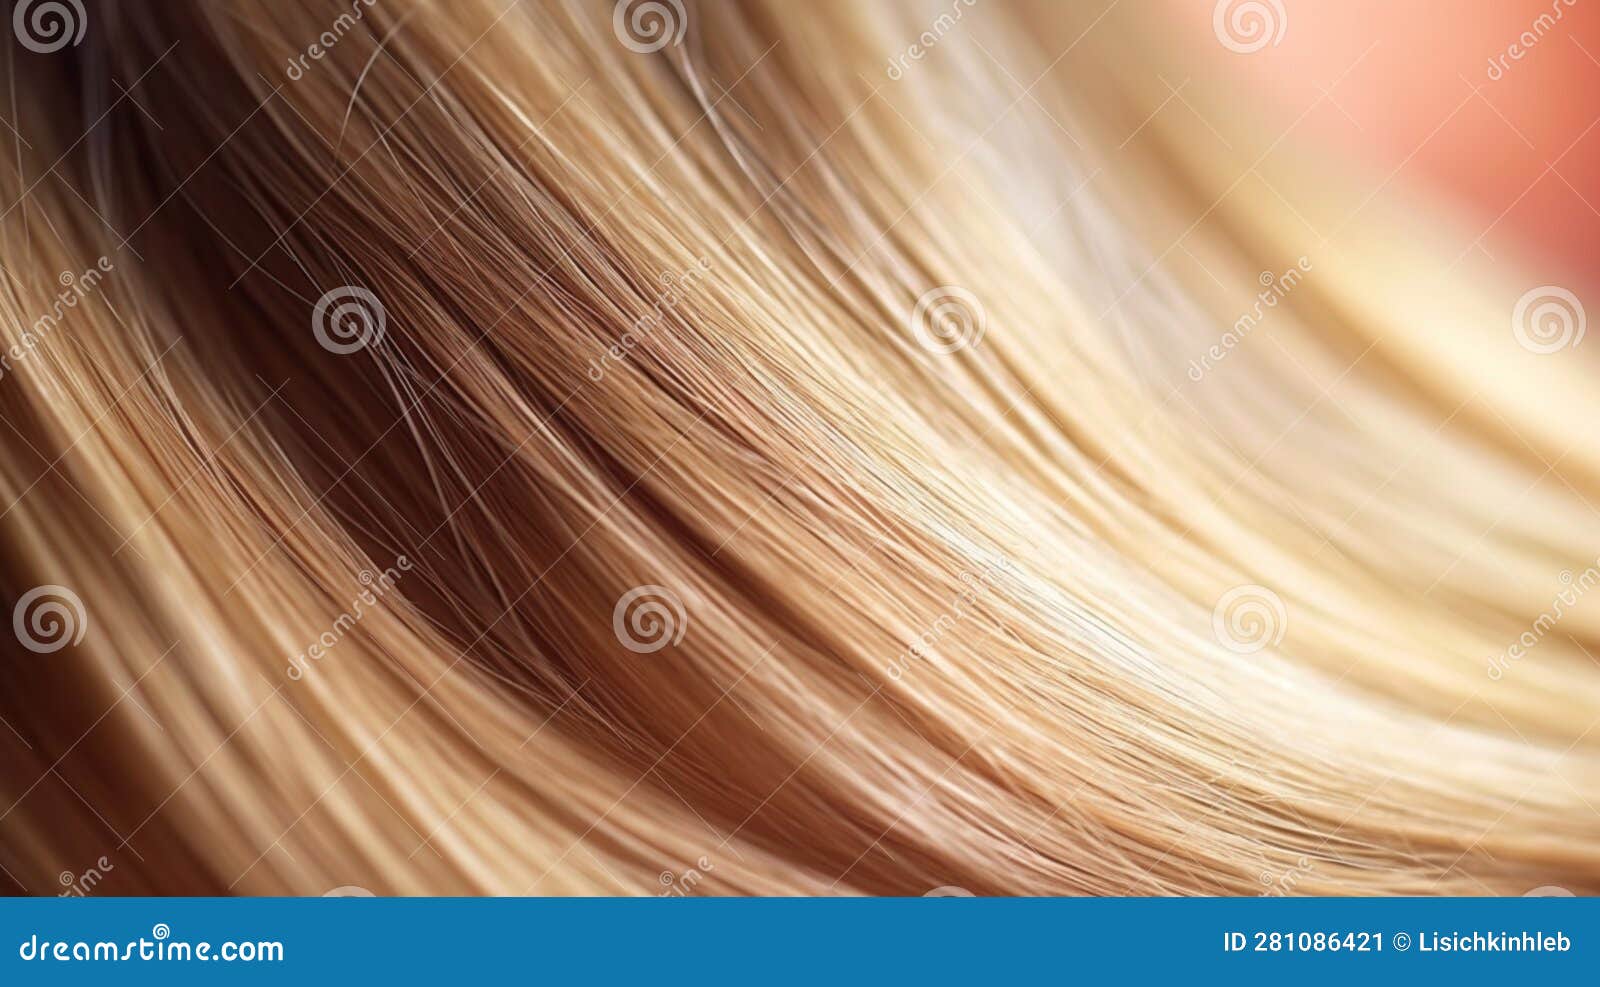 Blond Hair - wide 7